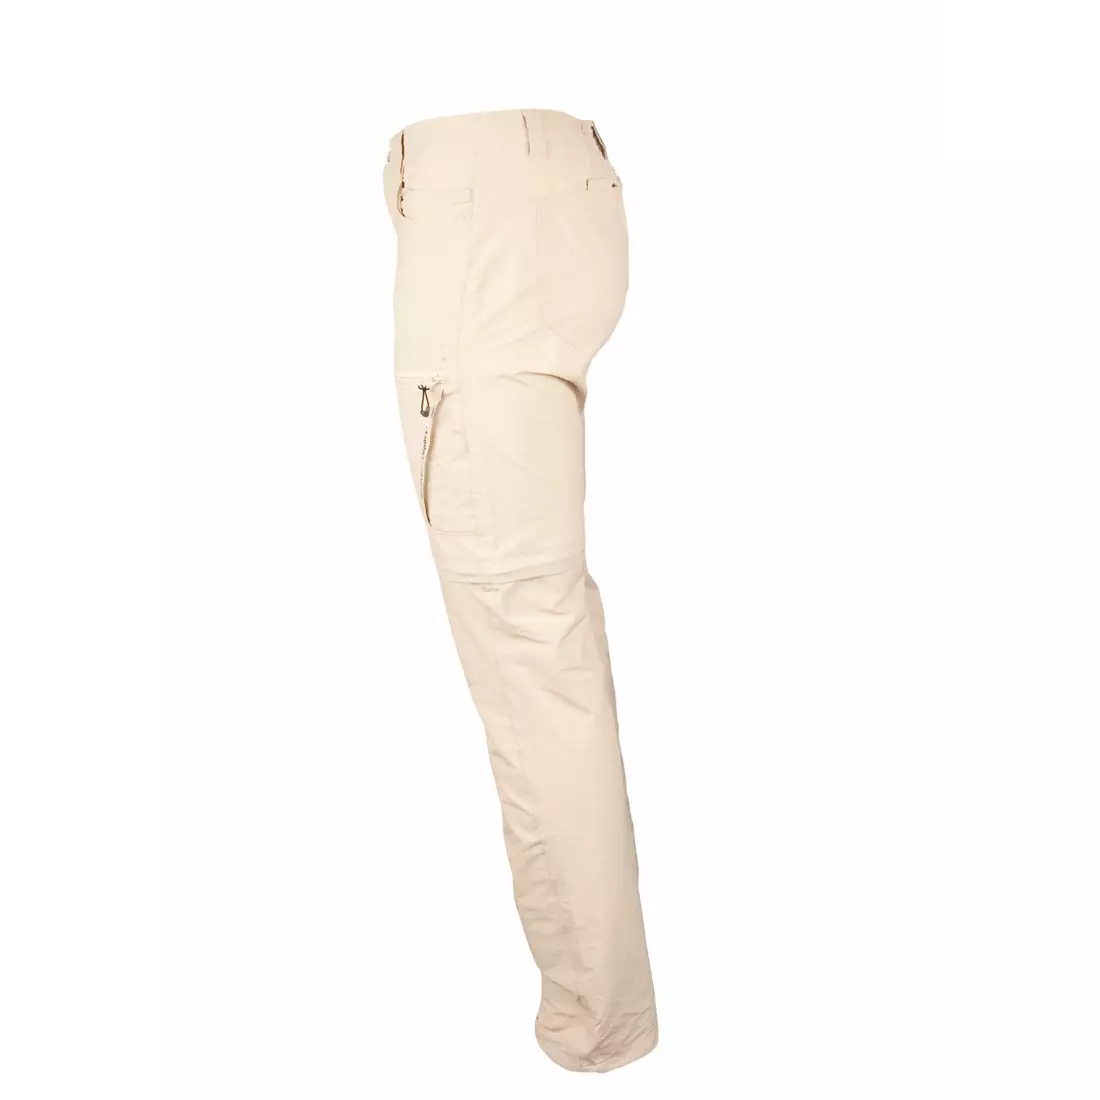 WETTERBERICHT - ROLANDO - Herren-Sporthose mit abnehmbaren Beinen, beige